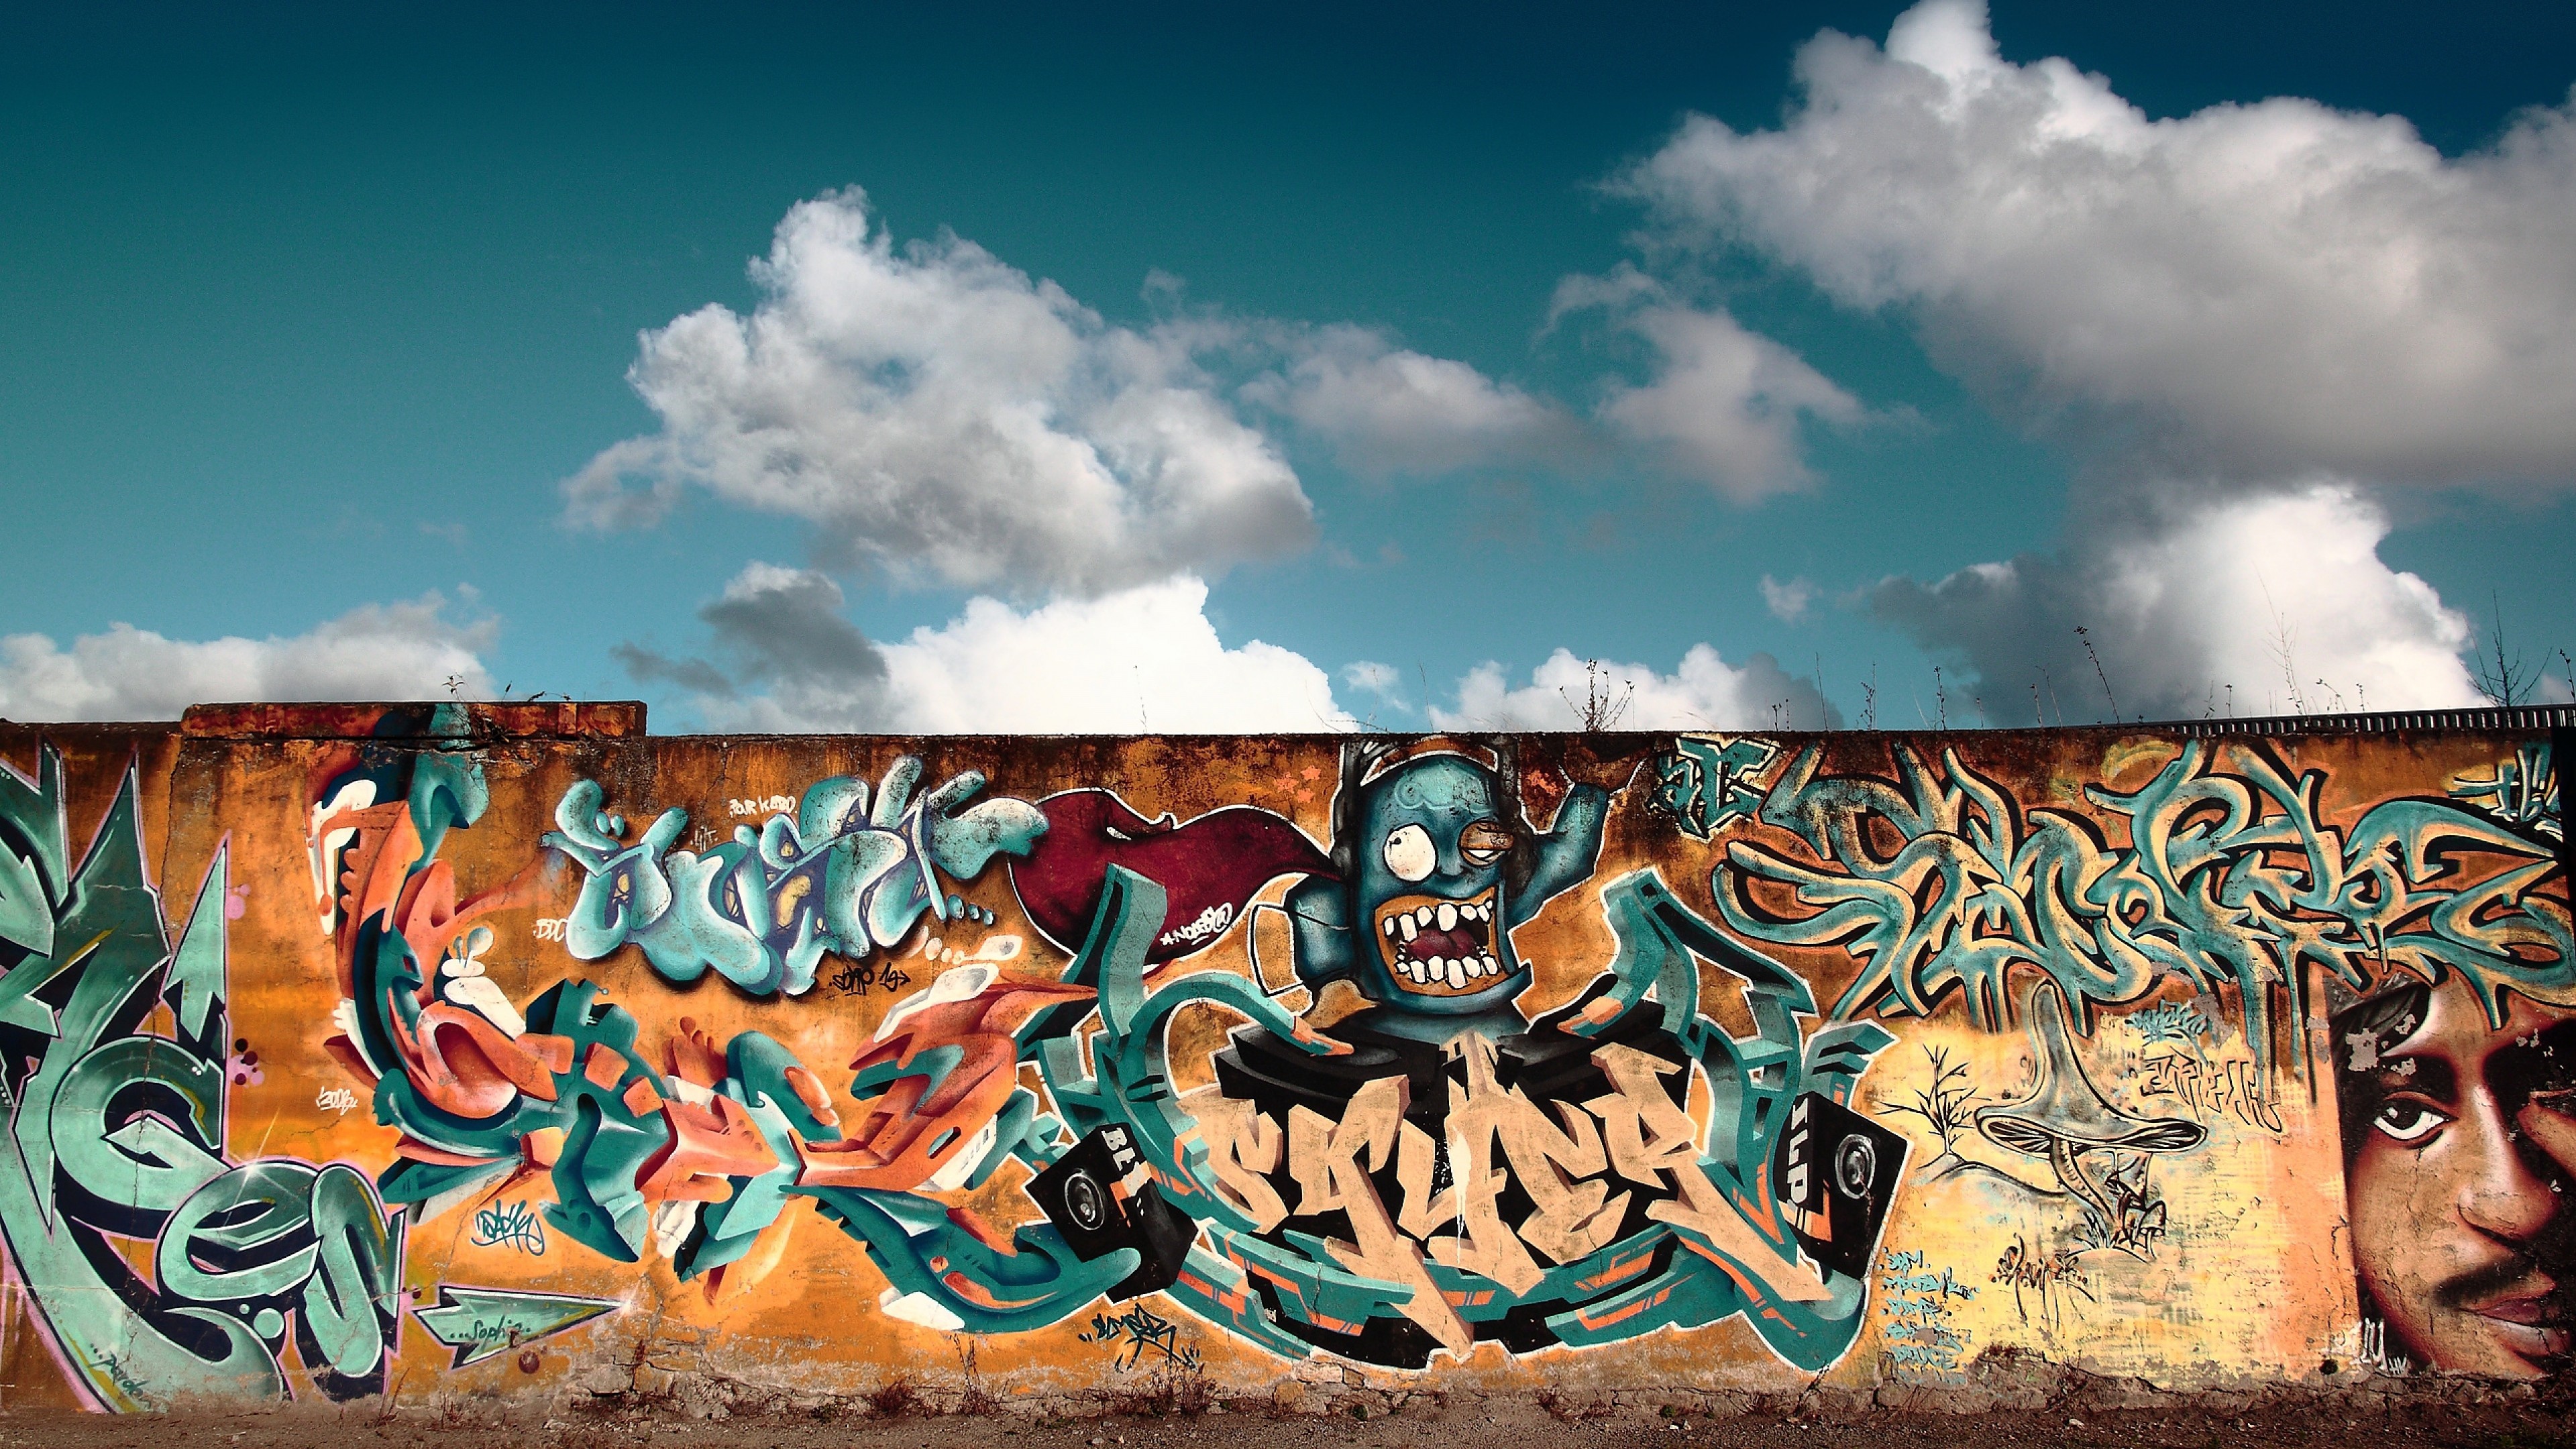 3840x2160 Graffiti background. Graffiti background Wall Street Art ...